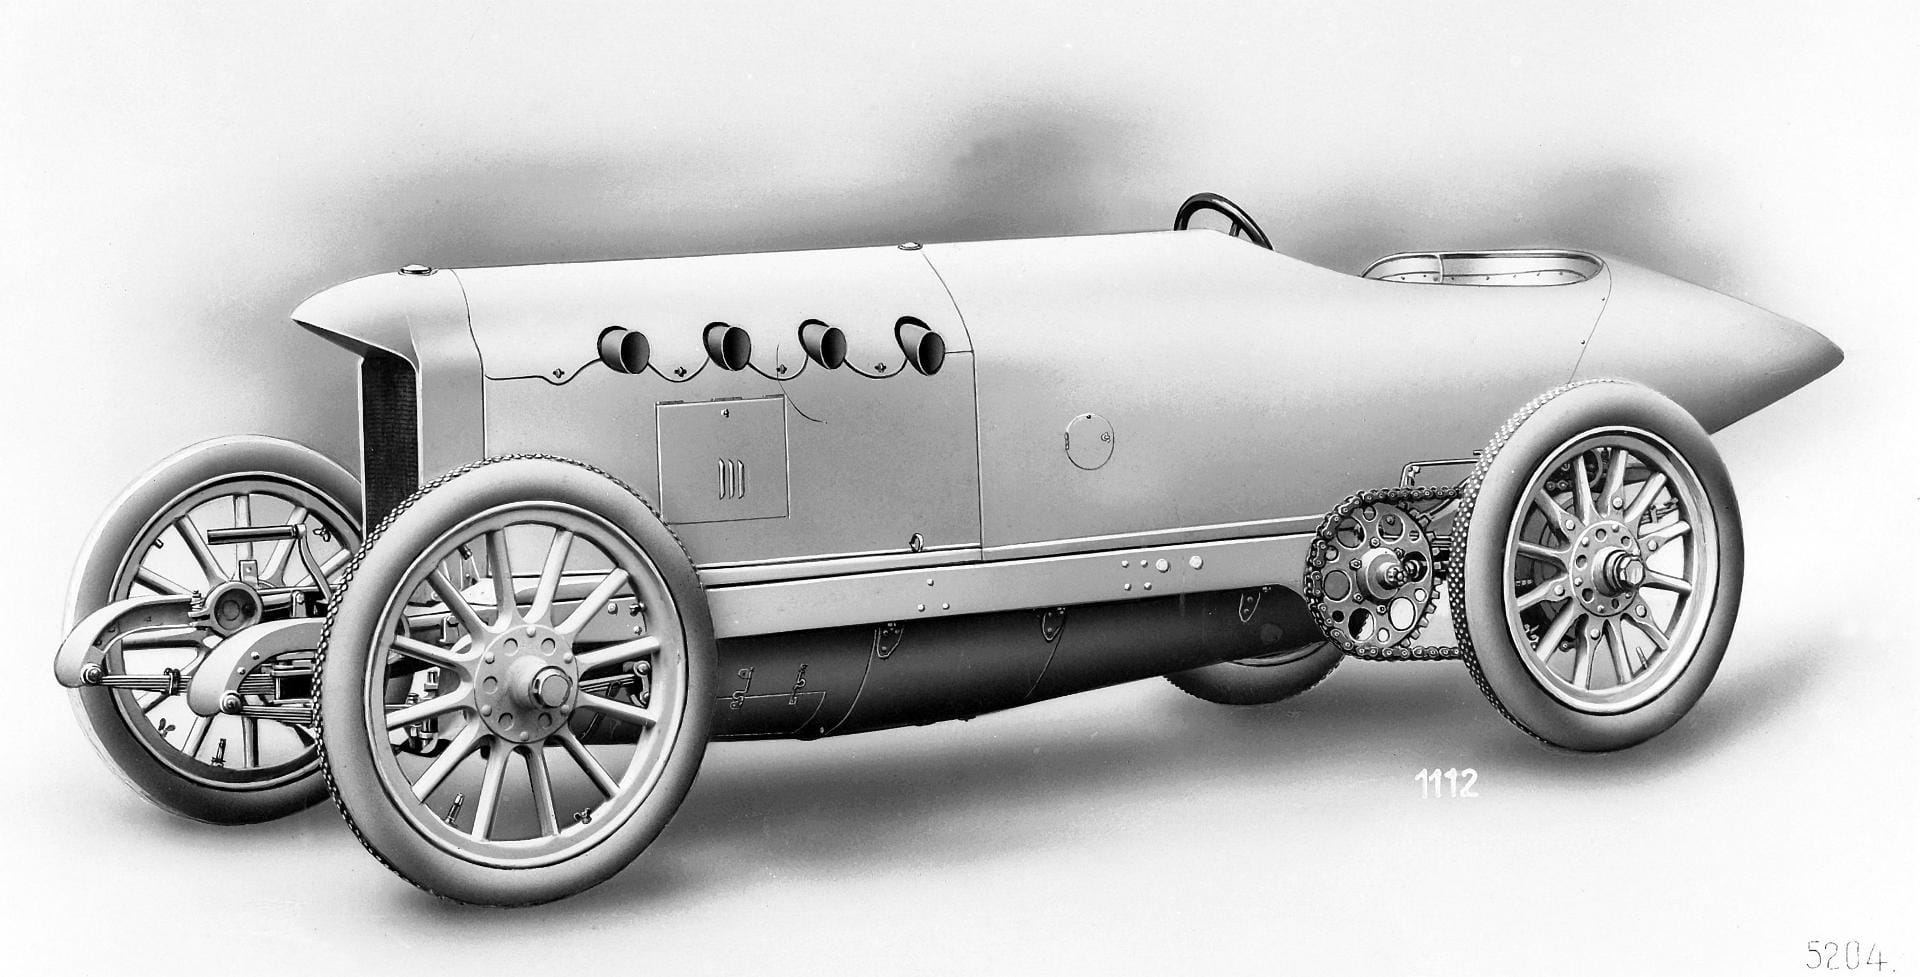 1914 ließ sich der amerikanische Rennfahrer Teddy Tetzlaff zum ersten Mal mit einem Auto auf den Bonneville Salt Flats sehen. Mit seinem deutschen Blitzen-Benz, einem für Autorennen eigens konstruierten Wettbewerbsfahrzeug von Benz & Cie in Mannheim (Vier-Zylinder-Reihenmotor, 21,5 Liter Hubraum, 200 PS) schaffte er 229,85 km/h.